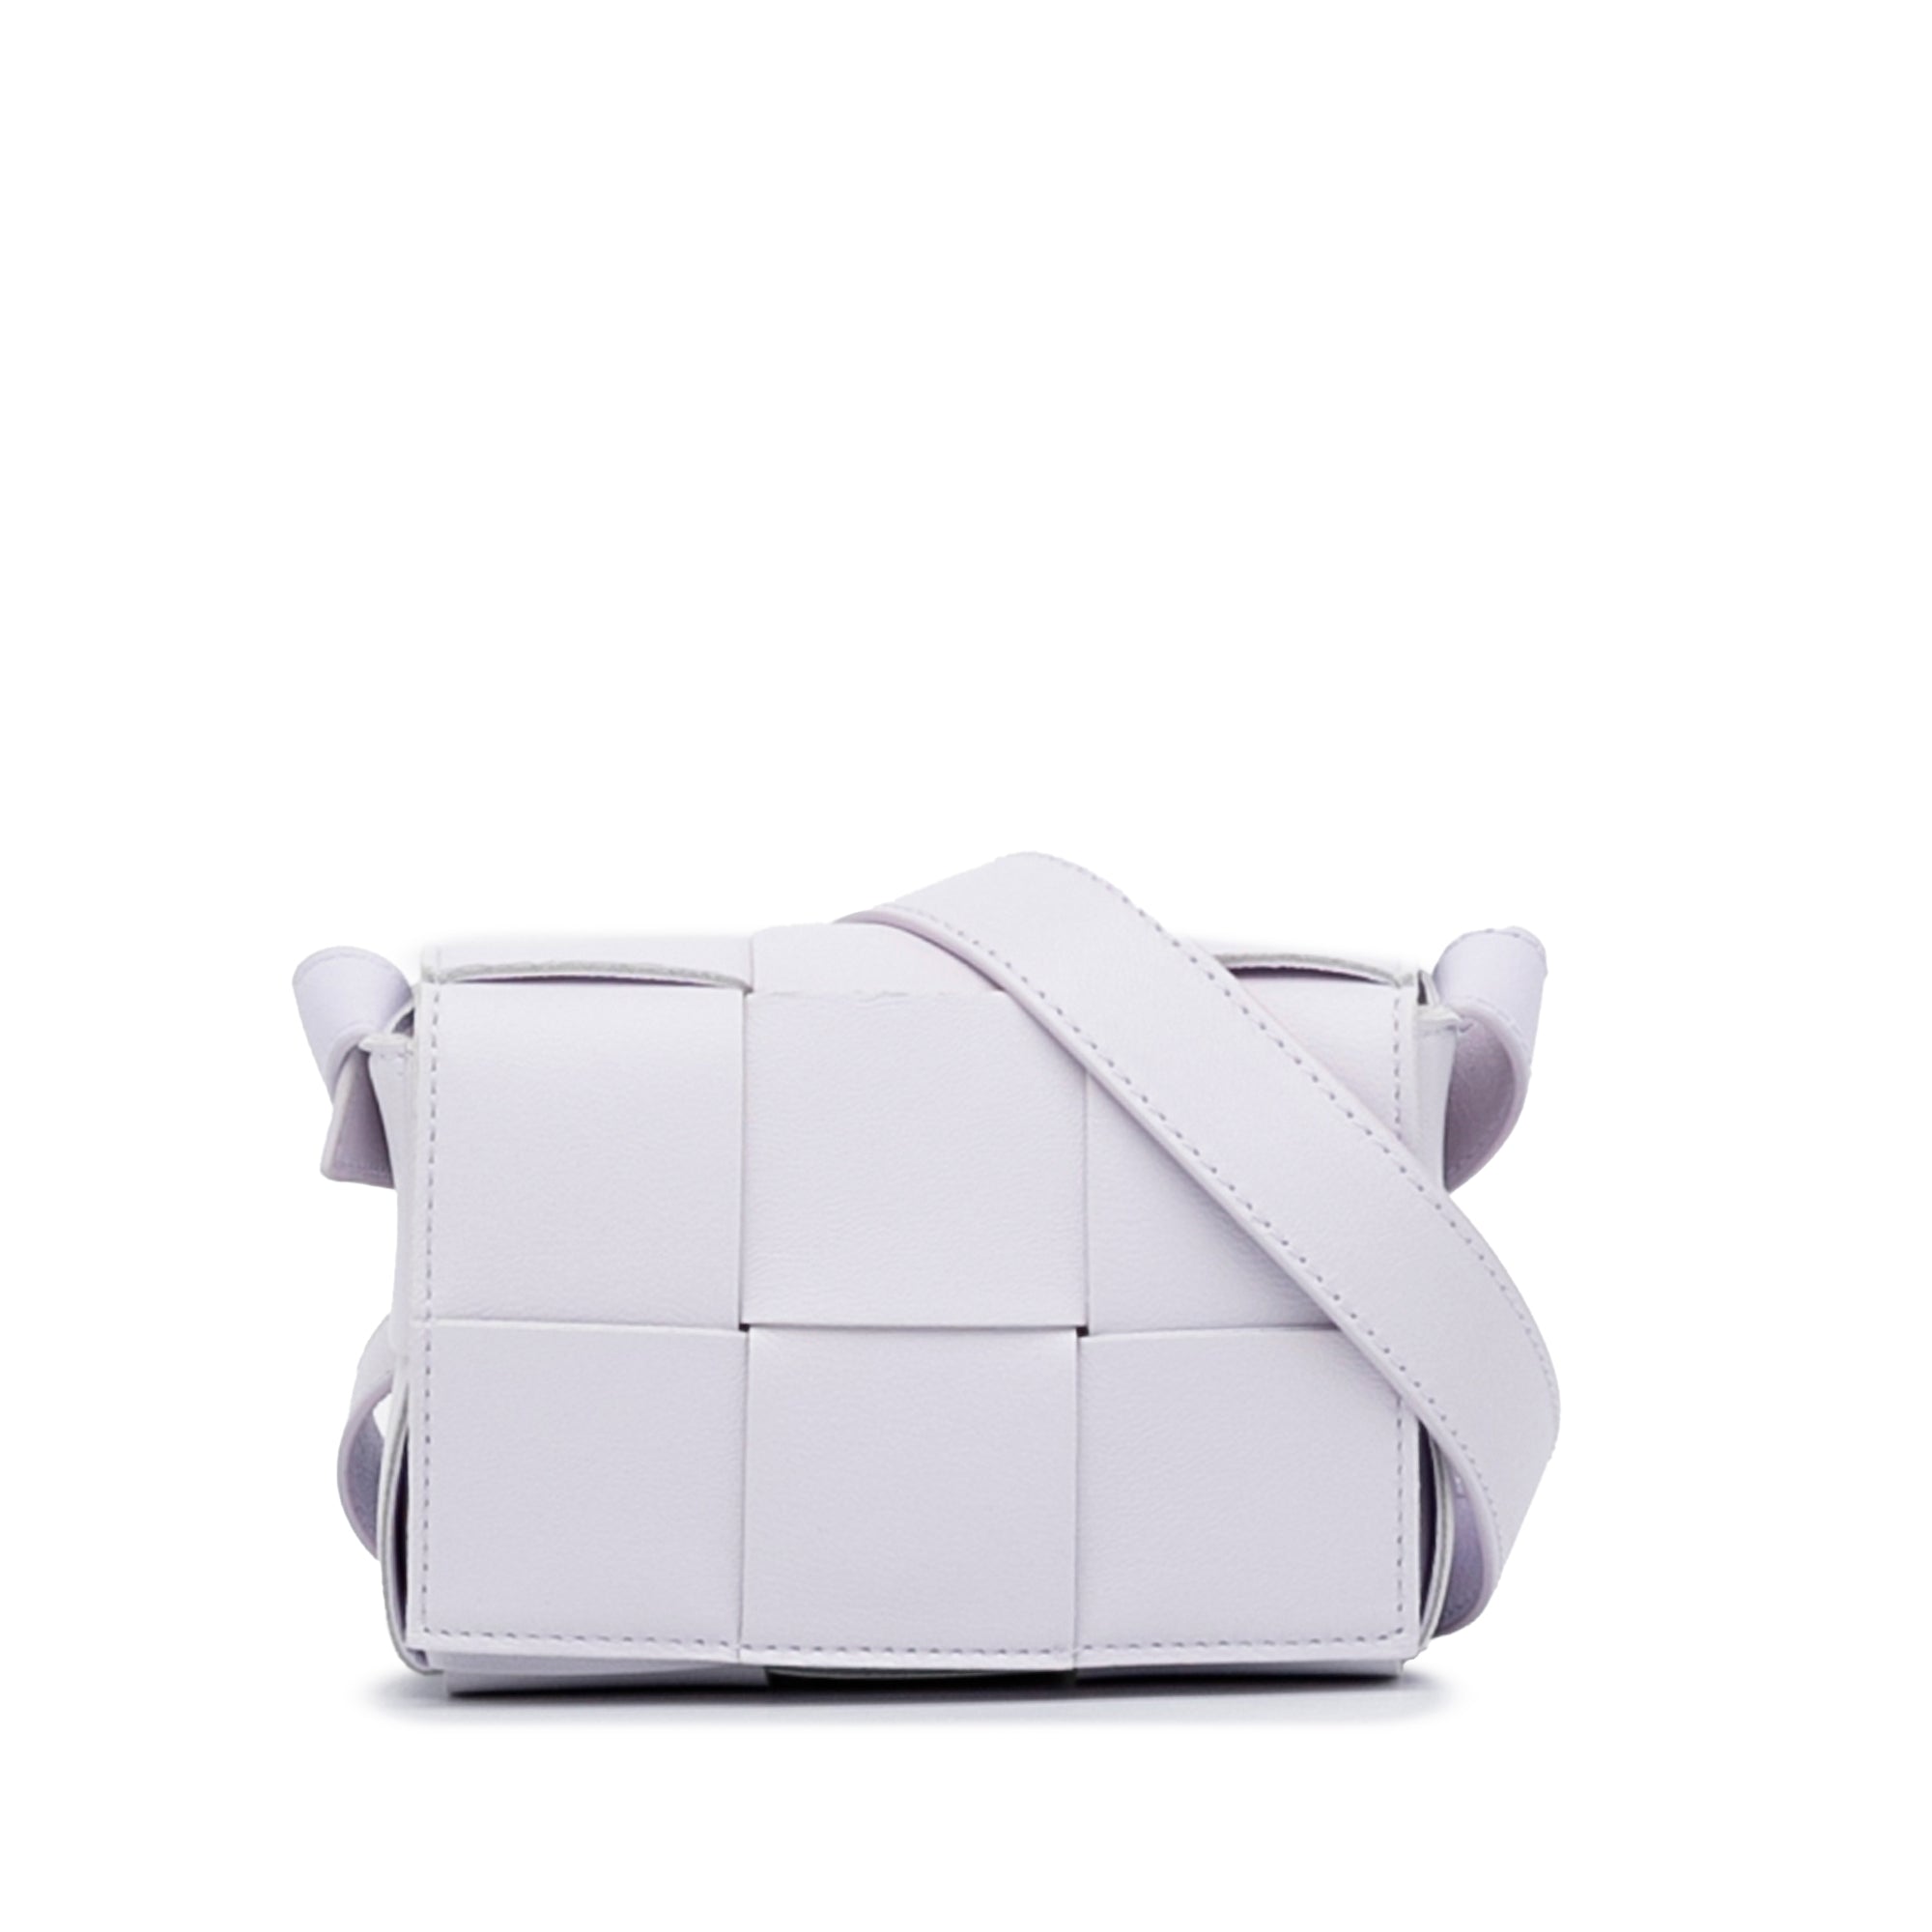 Bottega Veneta Women's Mini Cassette Crossbody Bag - White